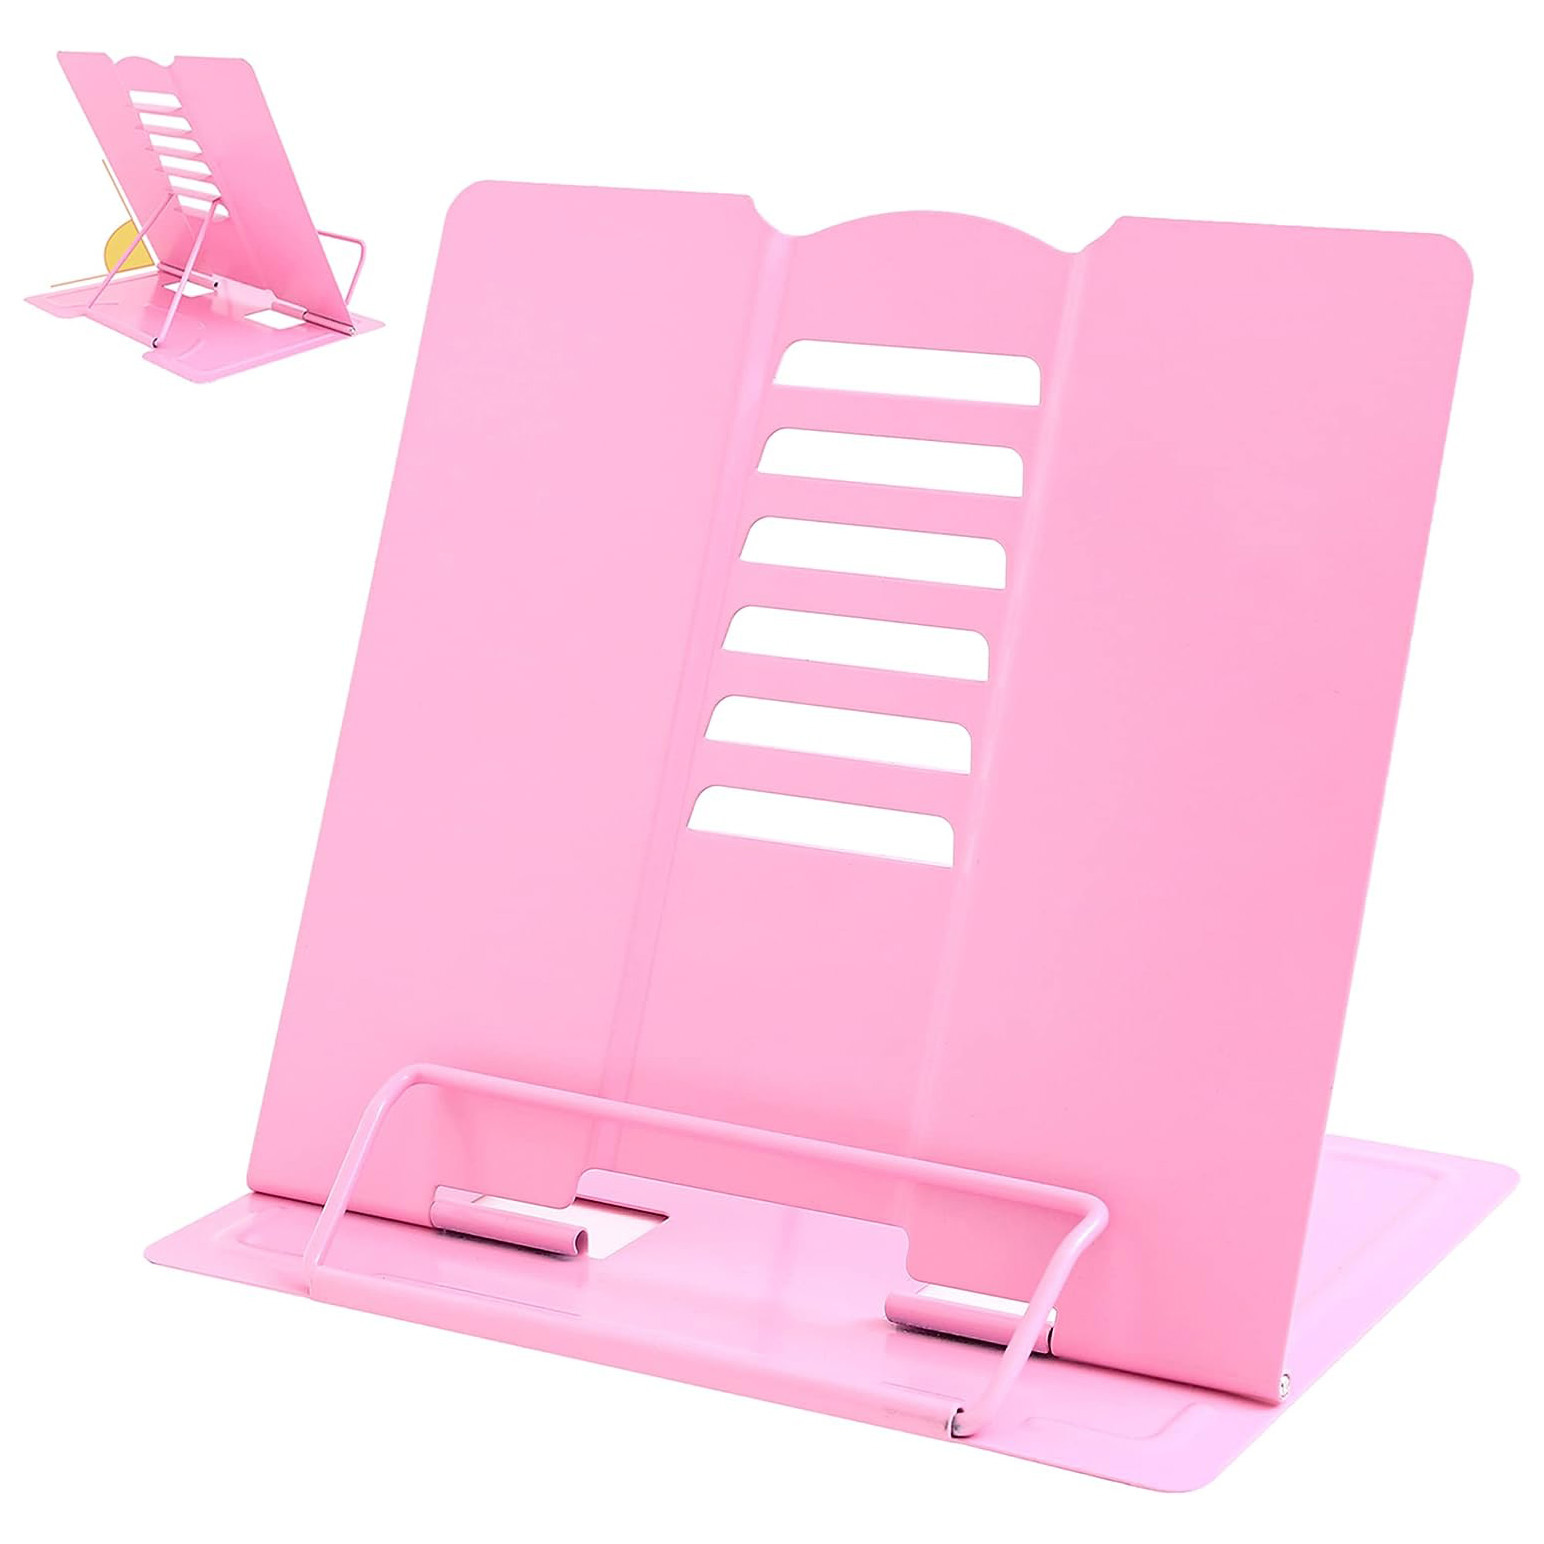 Adjustable Book Stand Portable Reading Rest Metal Holder (Pink)